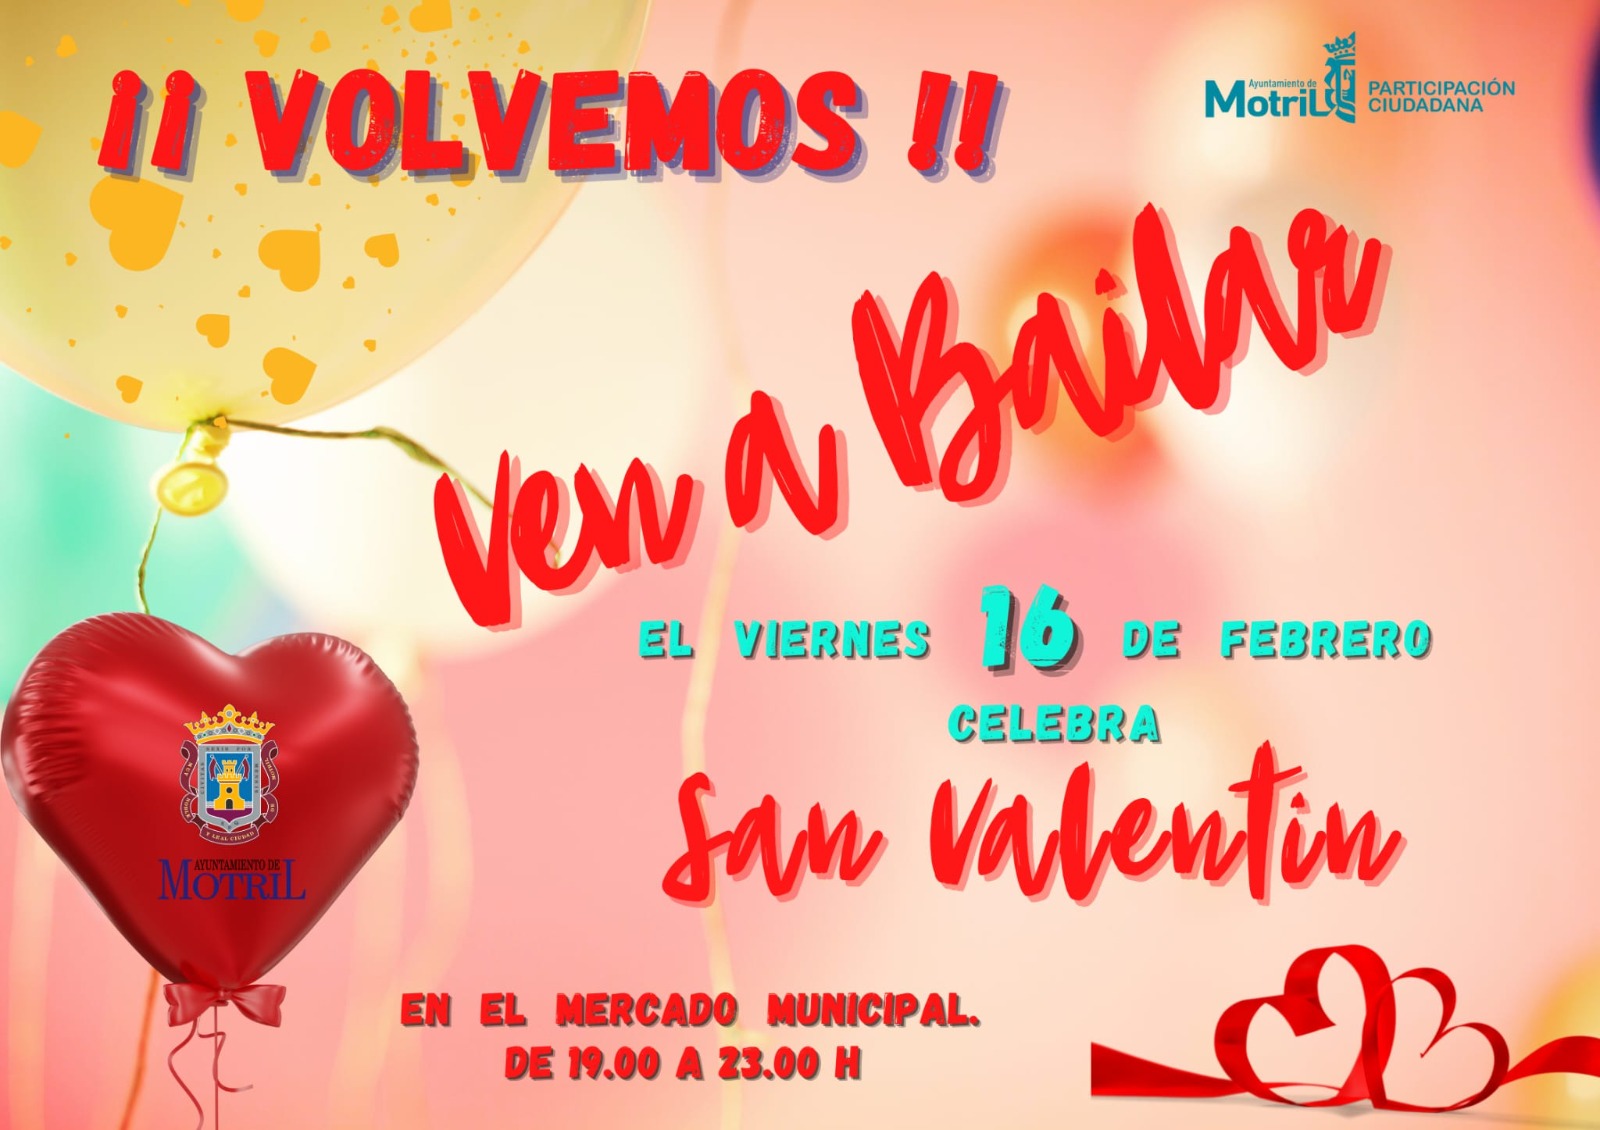 Los motrileos tienen una cita con Ven a Bailar este viernes en el mercado de San Agustn vistindose de San Valentn